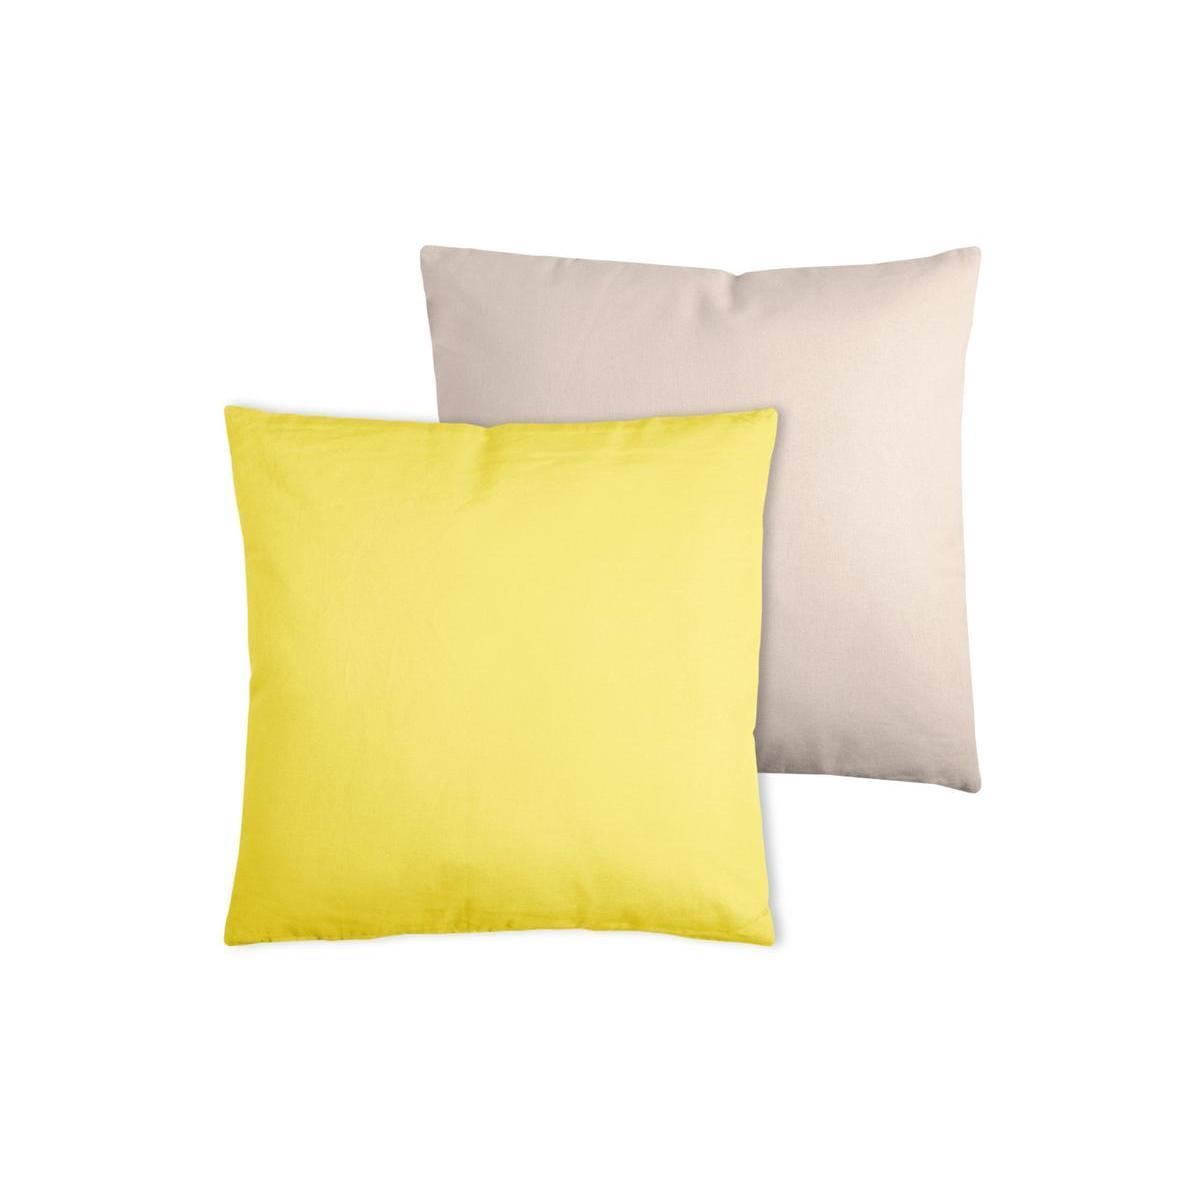 2 coussins - 100 % coton - 50 x 50 cm - Beige et jaune